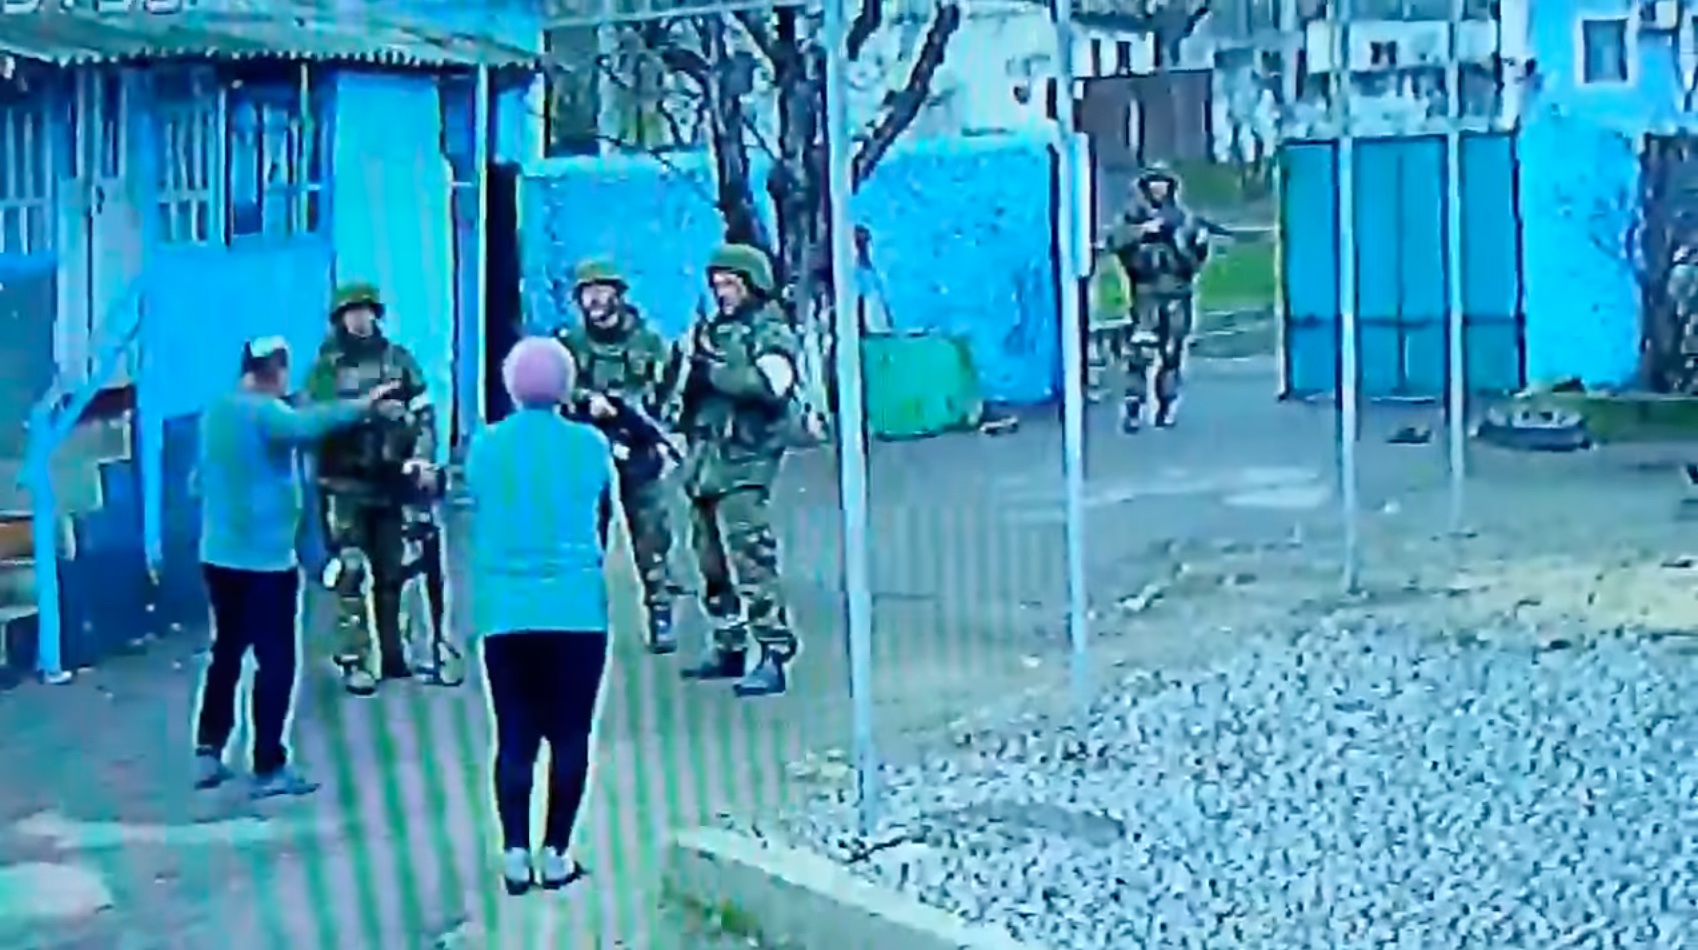 2 rettentően feldühödött nyugdíjas szabályosan elkergetett a háza udvaráról 4 állig felfegyverzett orosz katonát